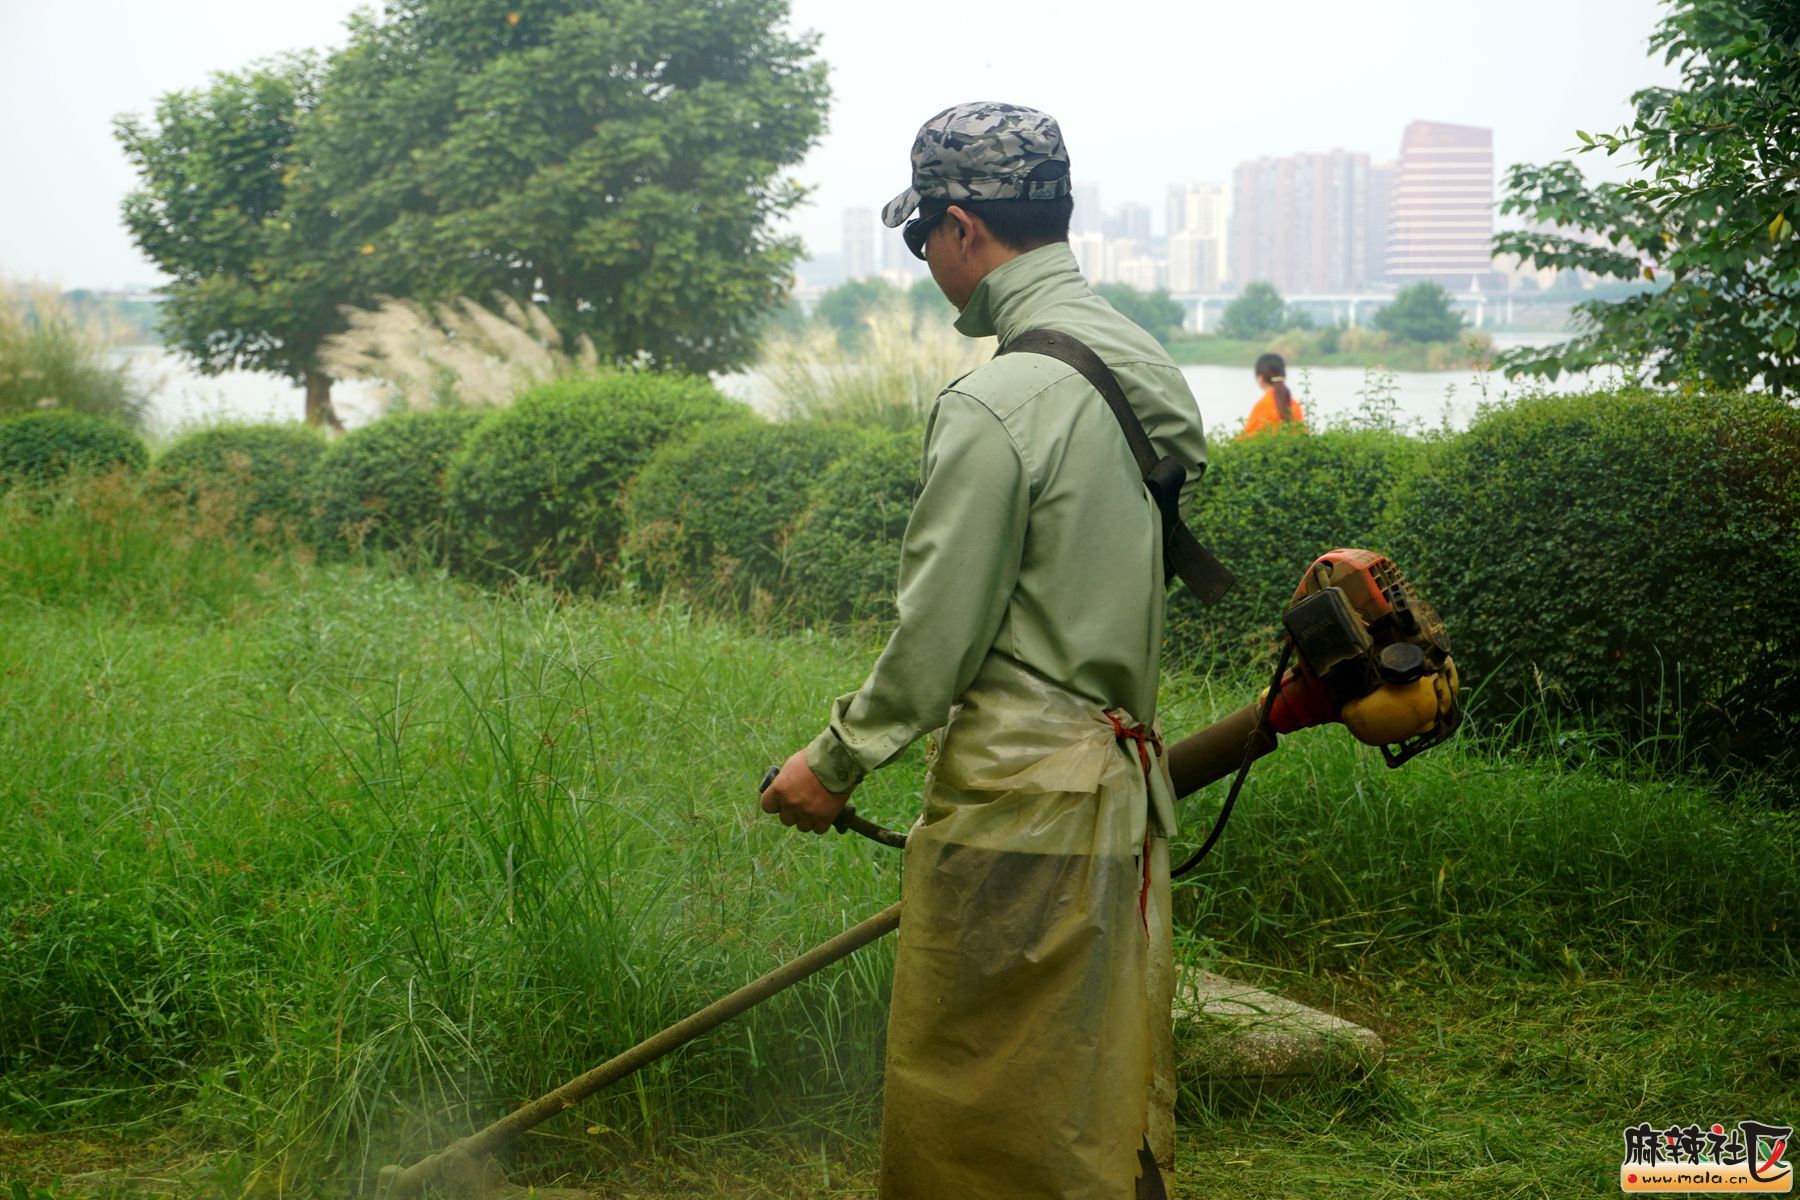 滨江公园环卫工人,雨后割草,灰尘减少,除蚊灭蝇,草地恢复生机